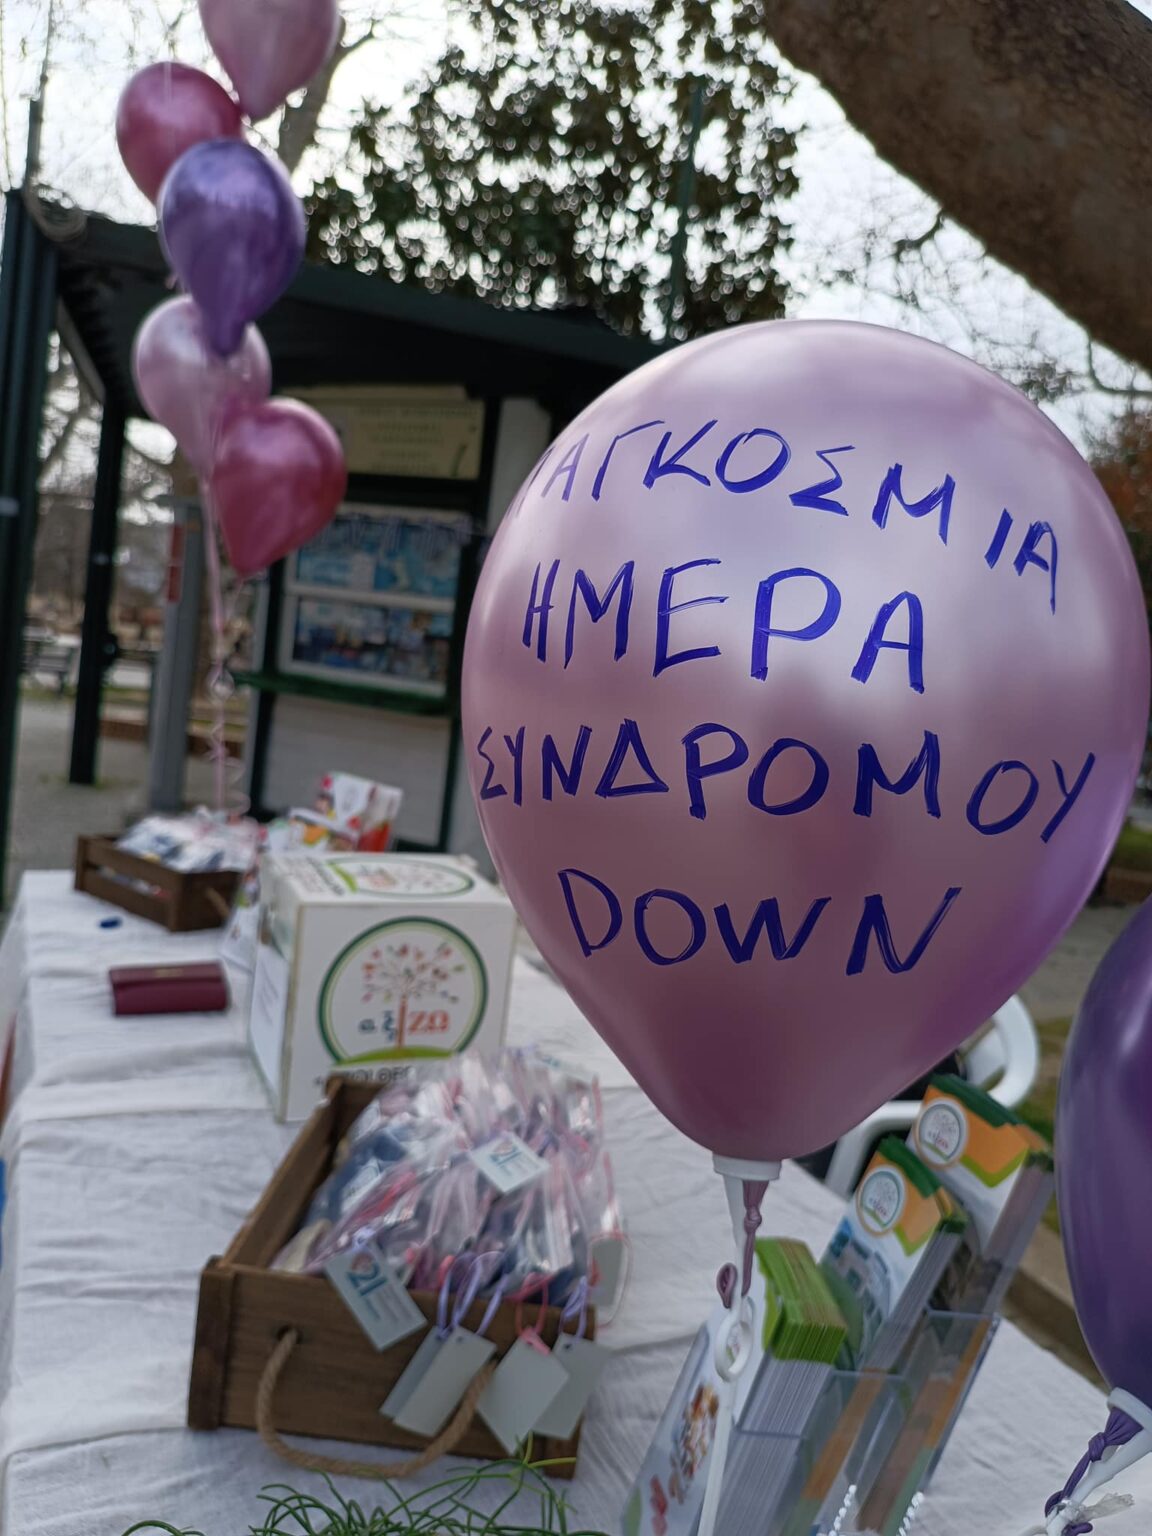 21 Μαρτίου: Παγκόσμια Ημέρα Συνδρόμου Down και εκδήλωση ευαισθητοποίησης στην πλατεία Κομοτηνής